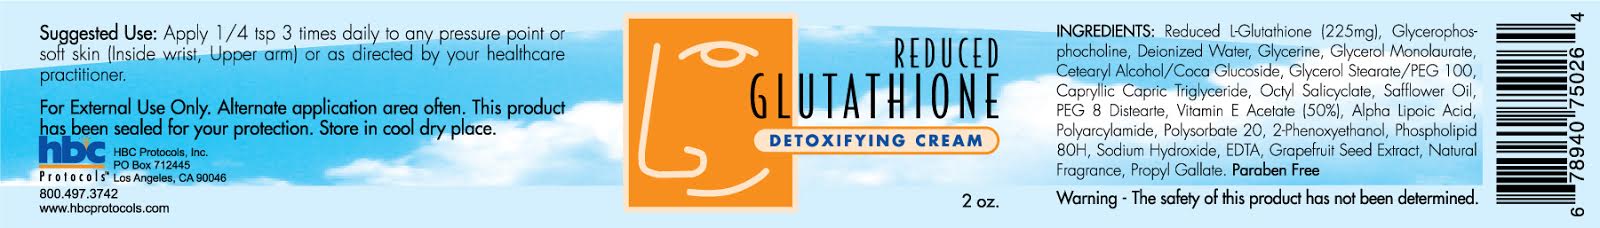 Reduced Glutathione Transdermal Cream